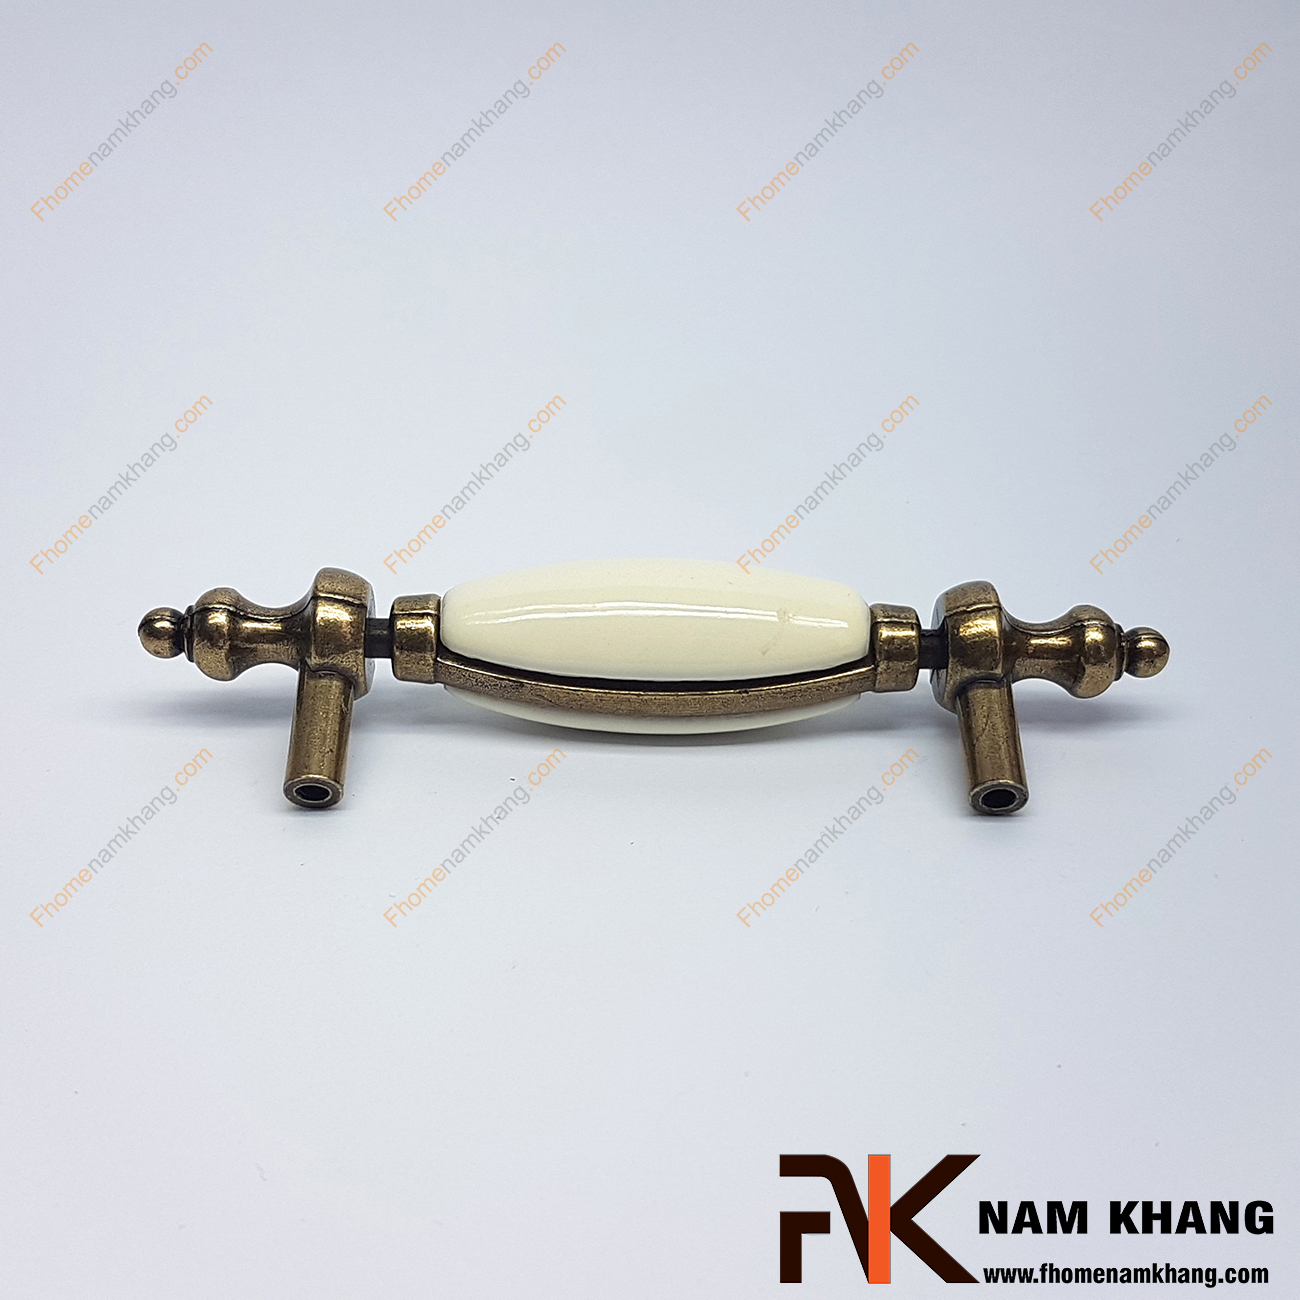 Tay nắm tủ cổ điển NK325-76KC là một dạng tay nắm kết hợp sứ cổ điển, giữa tay nắm là vòng sứ tròn bóng được bo tròn mềm mại và dịu mắt.